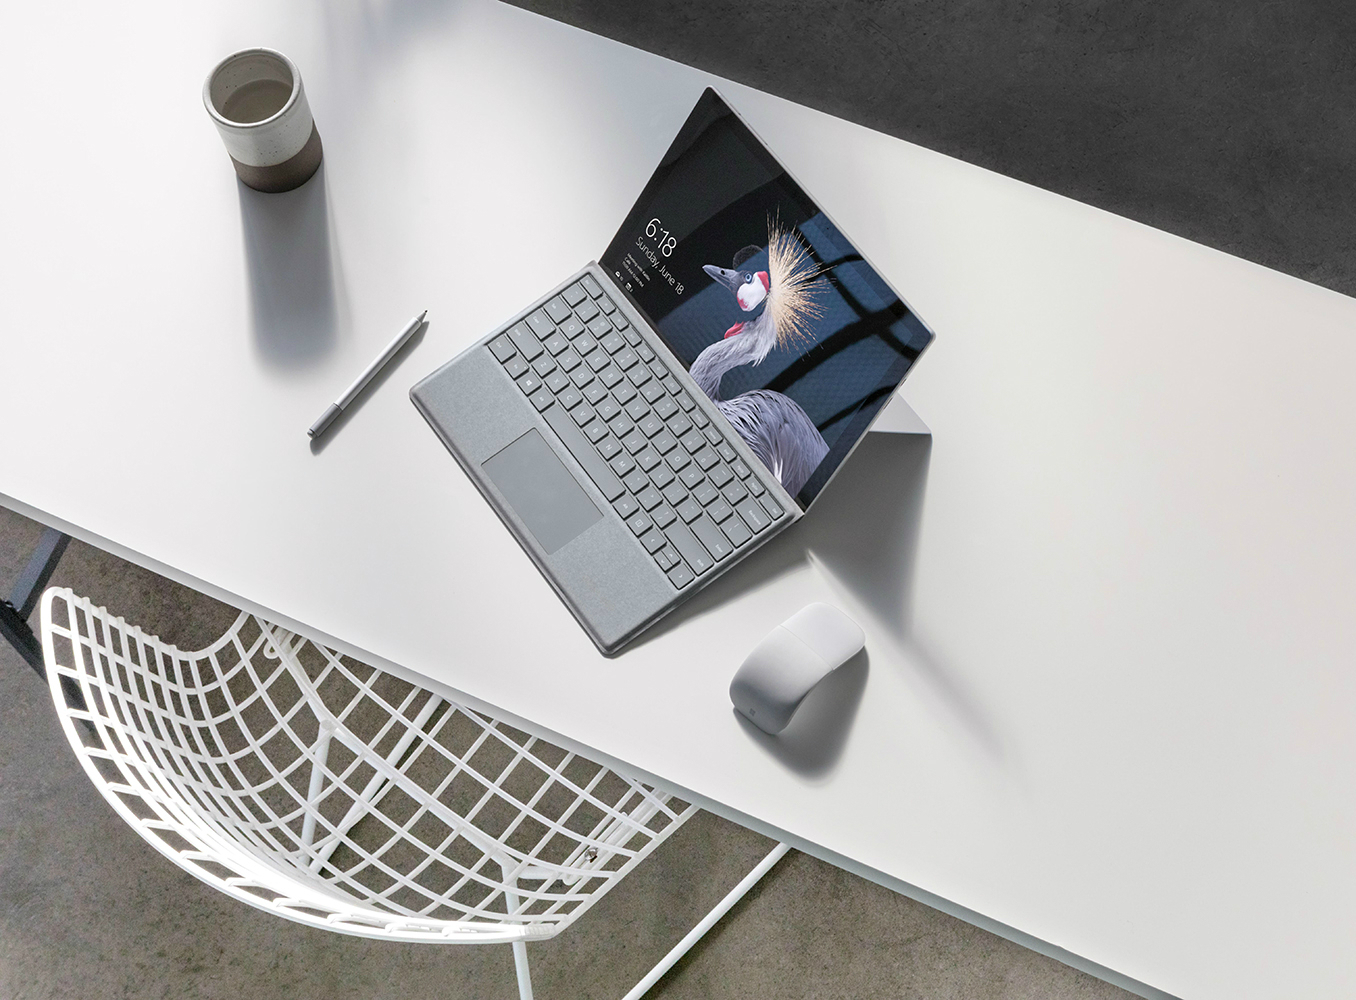 Surface Pro (2017) получил новый процессор и бархатную клавиатуру